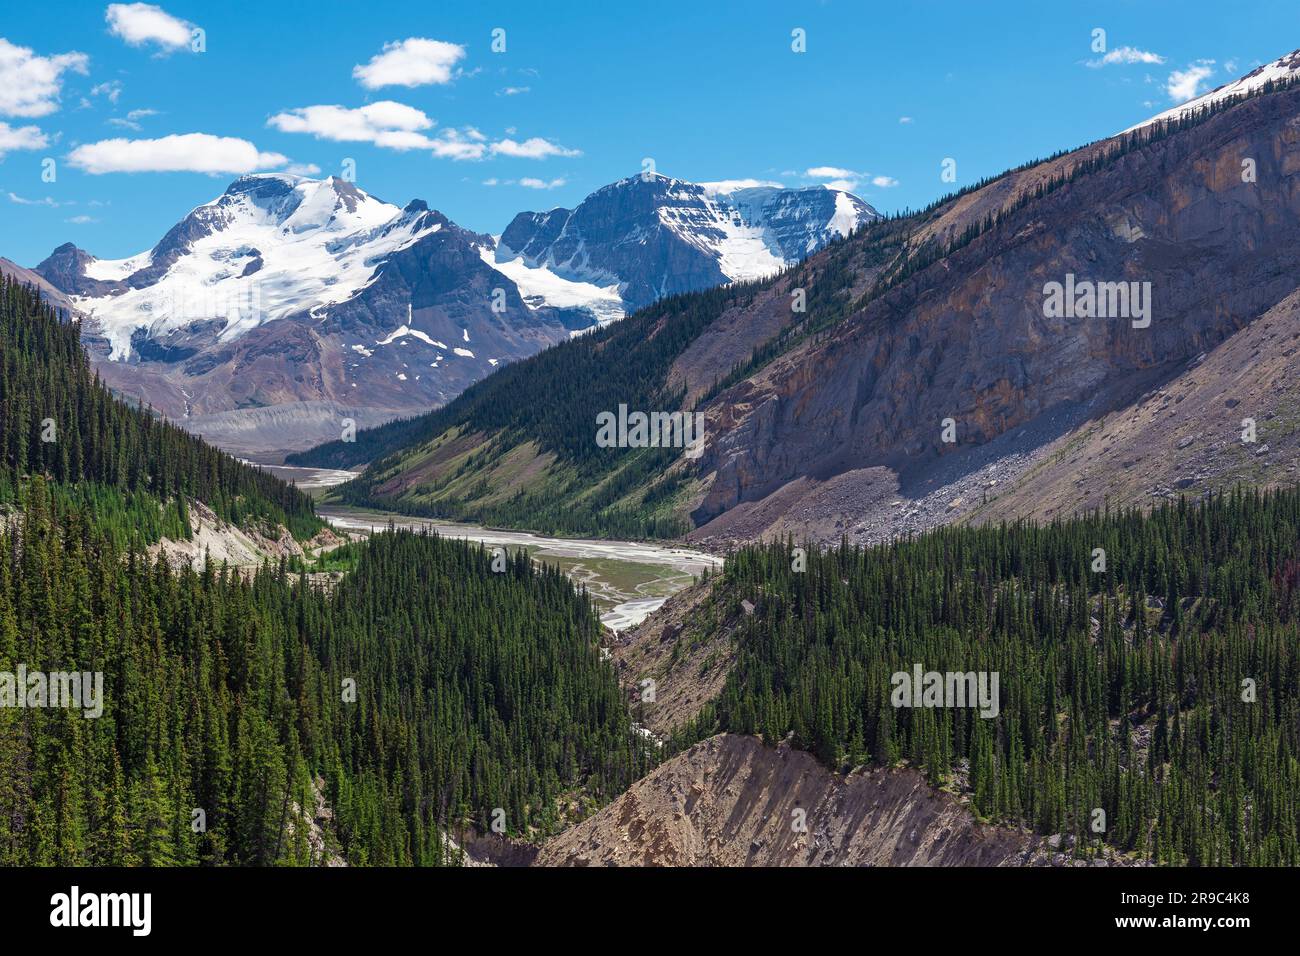 Columbia Icefield Skywalk paesaggio sopra la foresta di pini, il fiume Athabasca e le Montagne Rocciose, il parco nazionale di Banff, Canada. Foto Stock